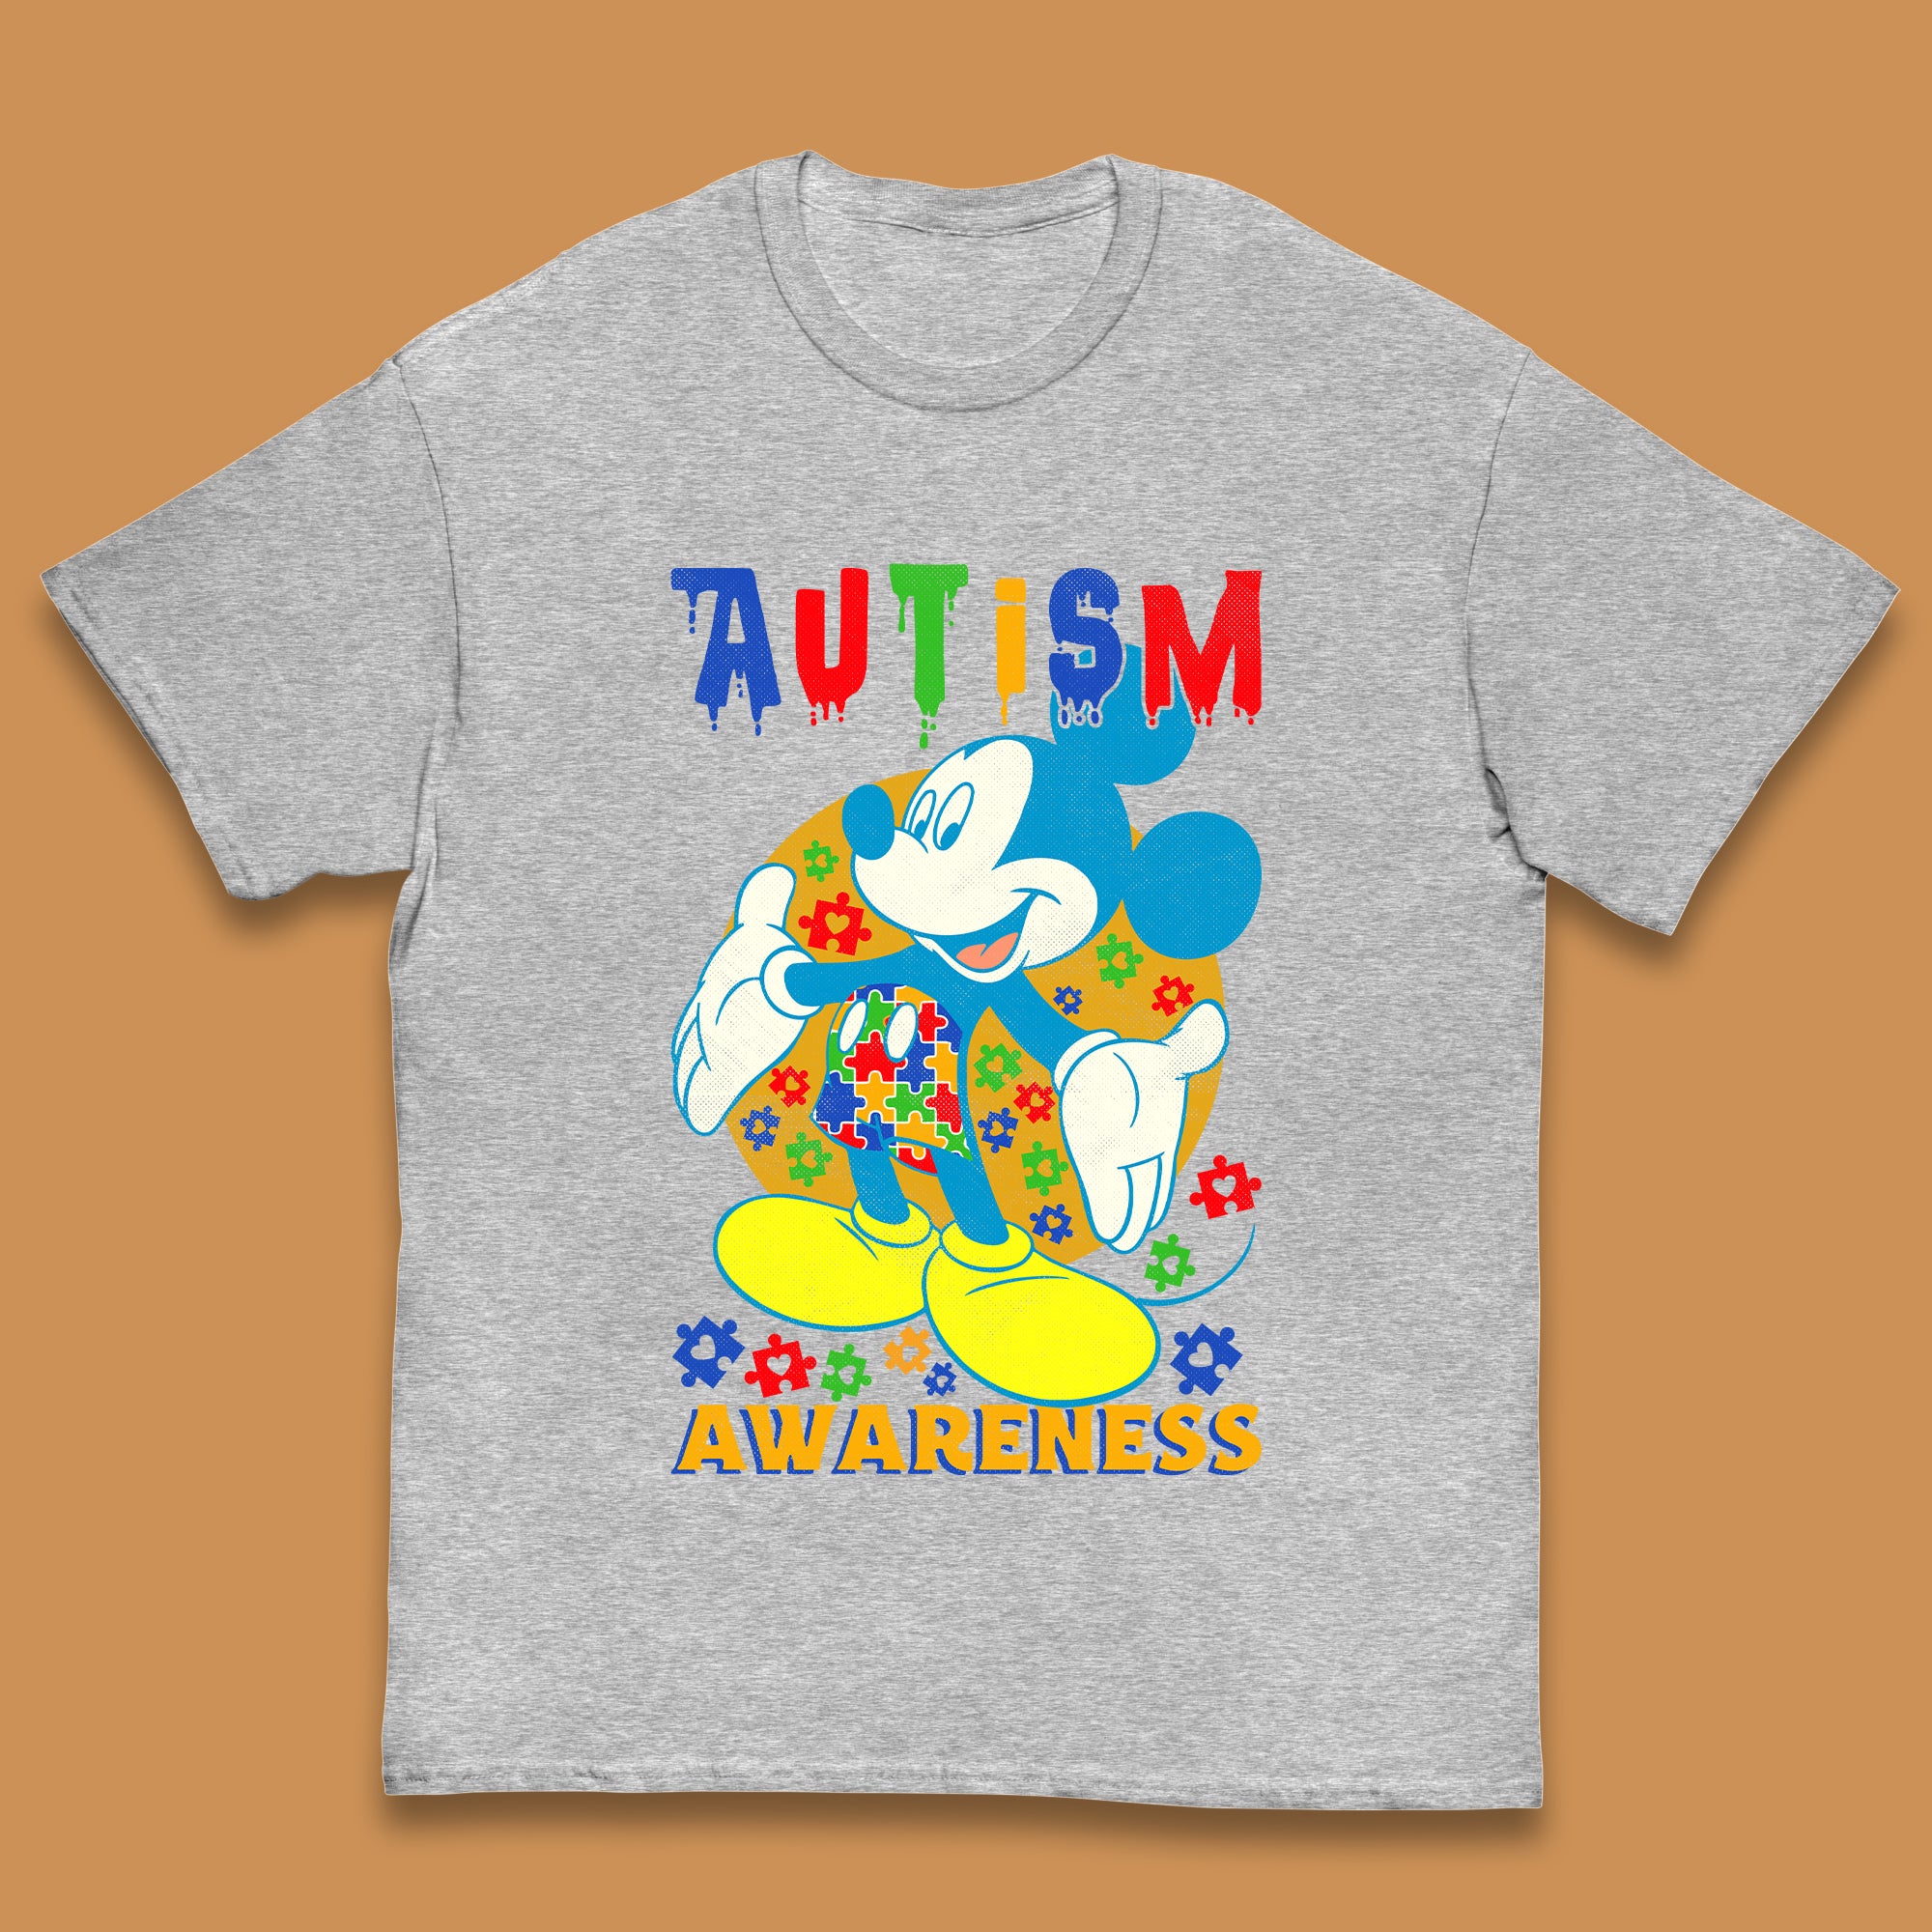 Autism Awareness Mickey Mouse Kids T-Shirt